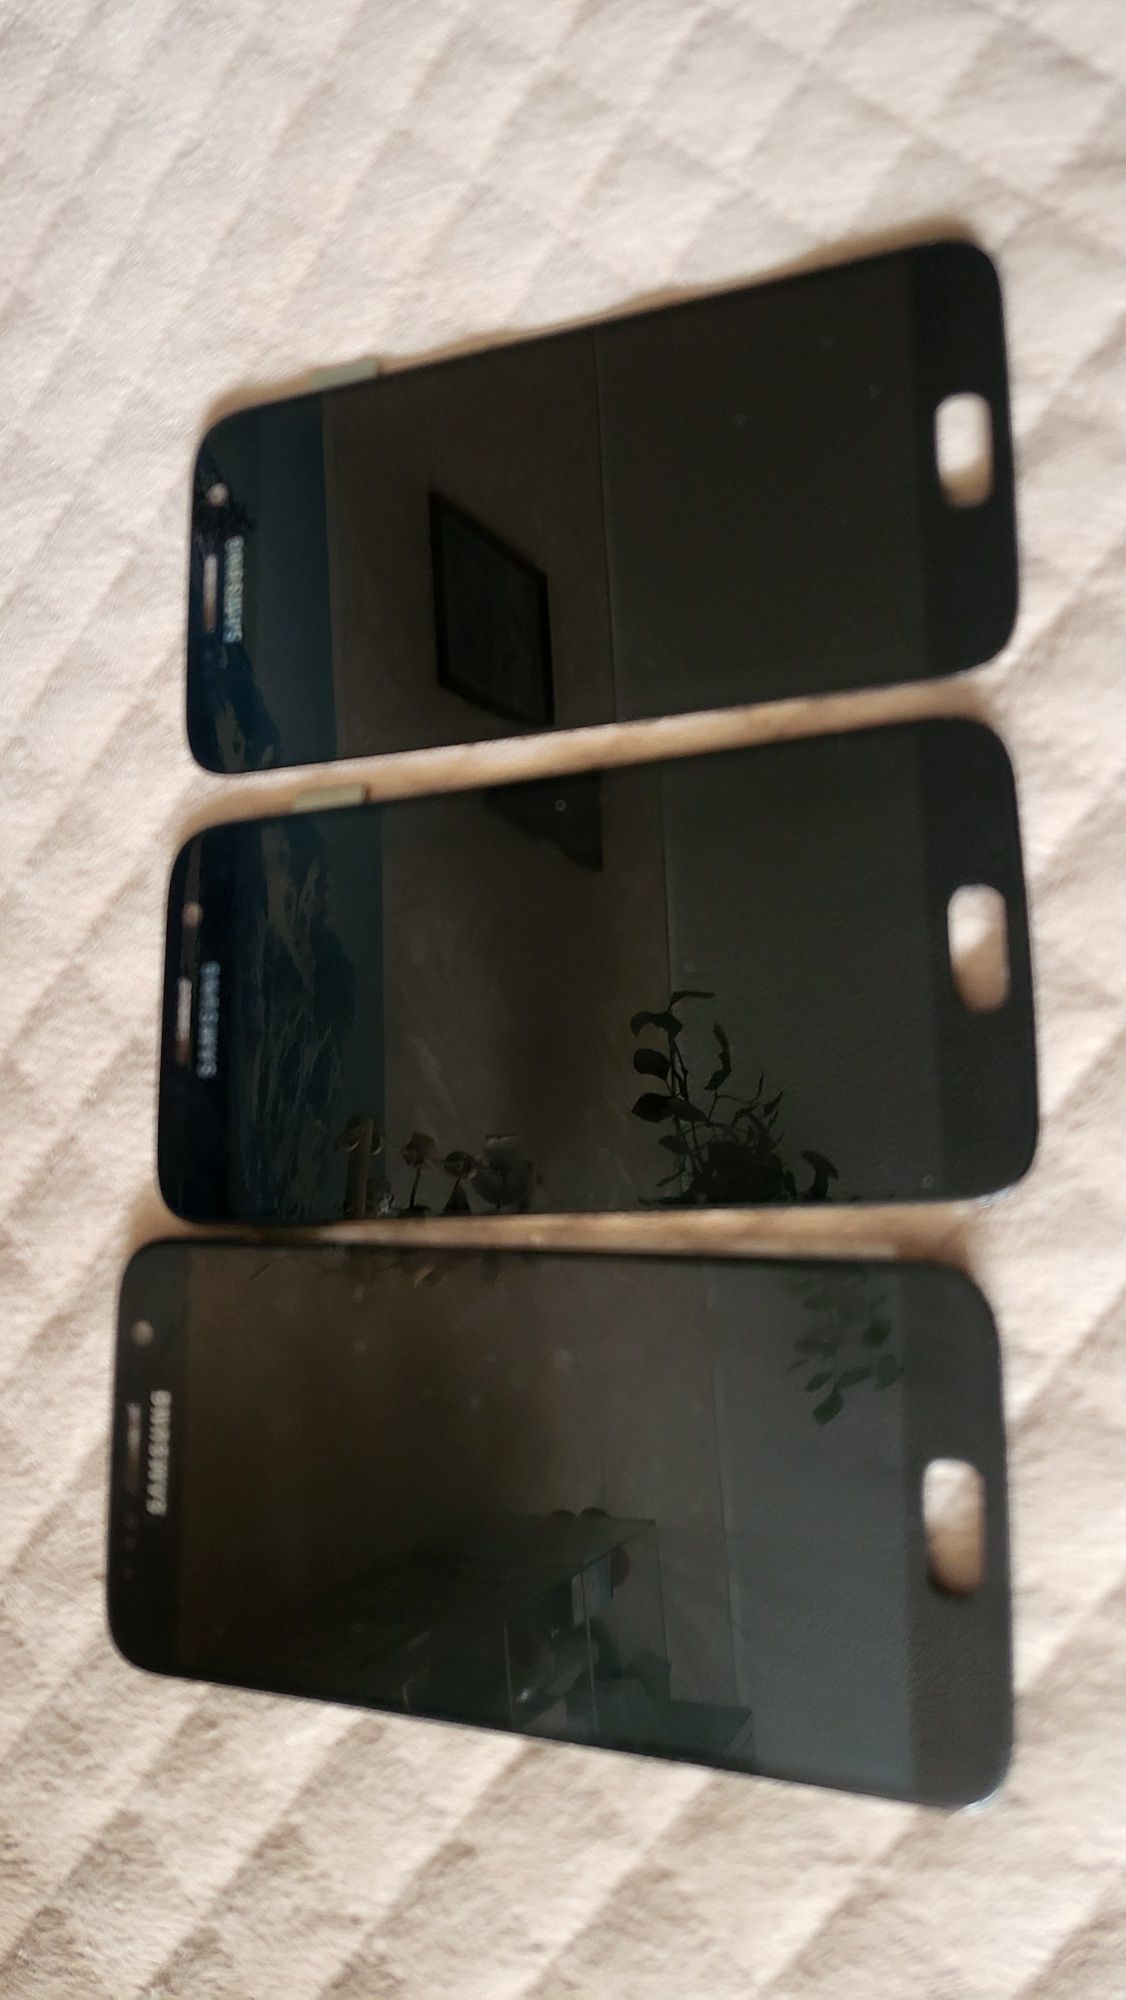 Ekran LCD Galaxy S7